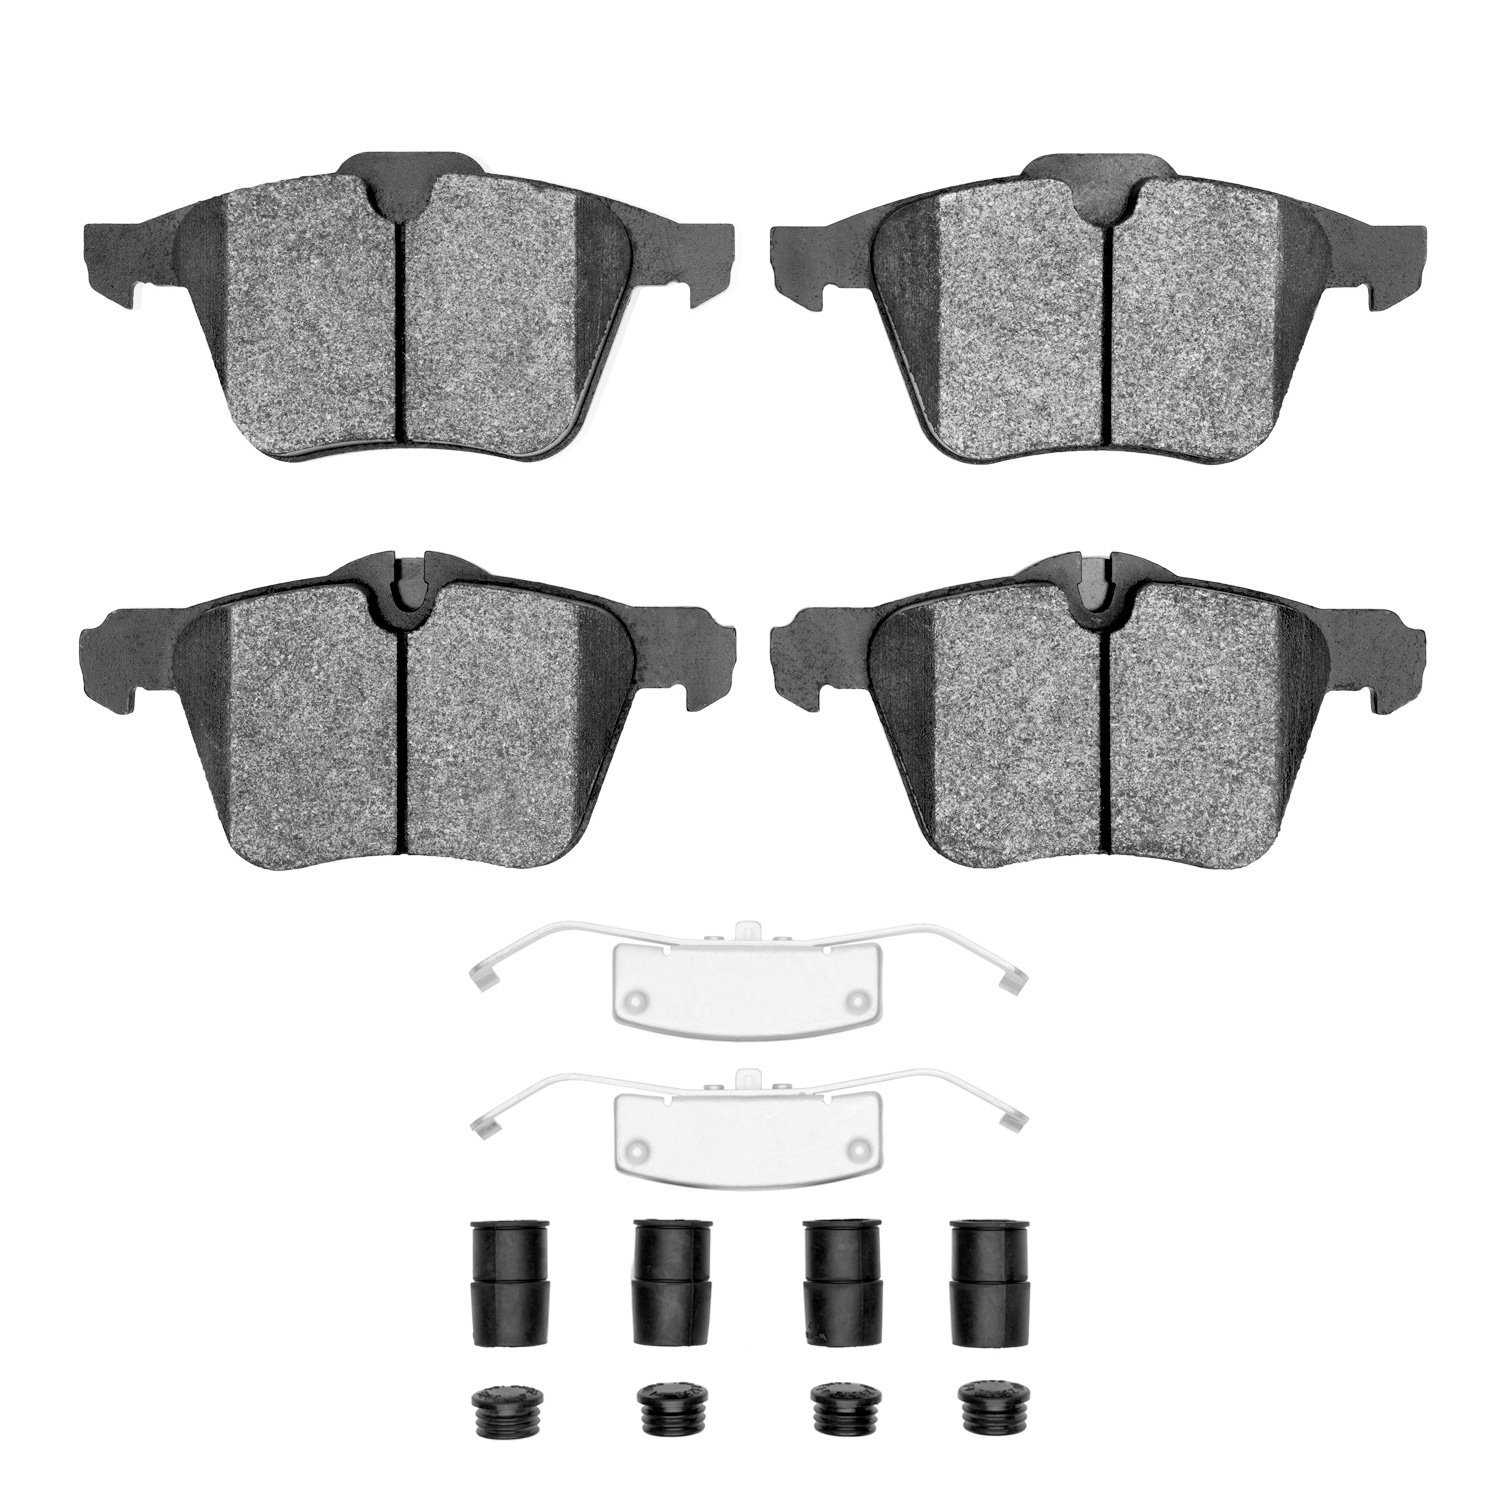 1552-1240-02 5000 Advanced Low-Metallic Brake Pads & Hardware Kit, 2010-2019 Jaguar, Position: Front